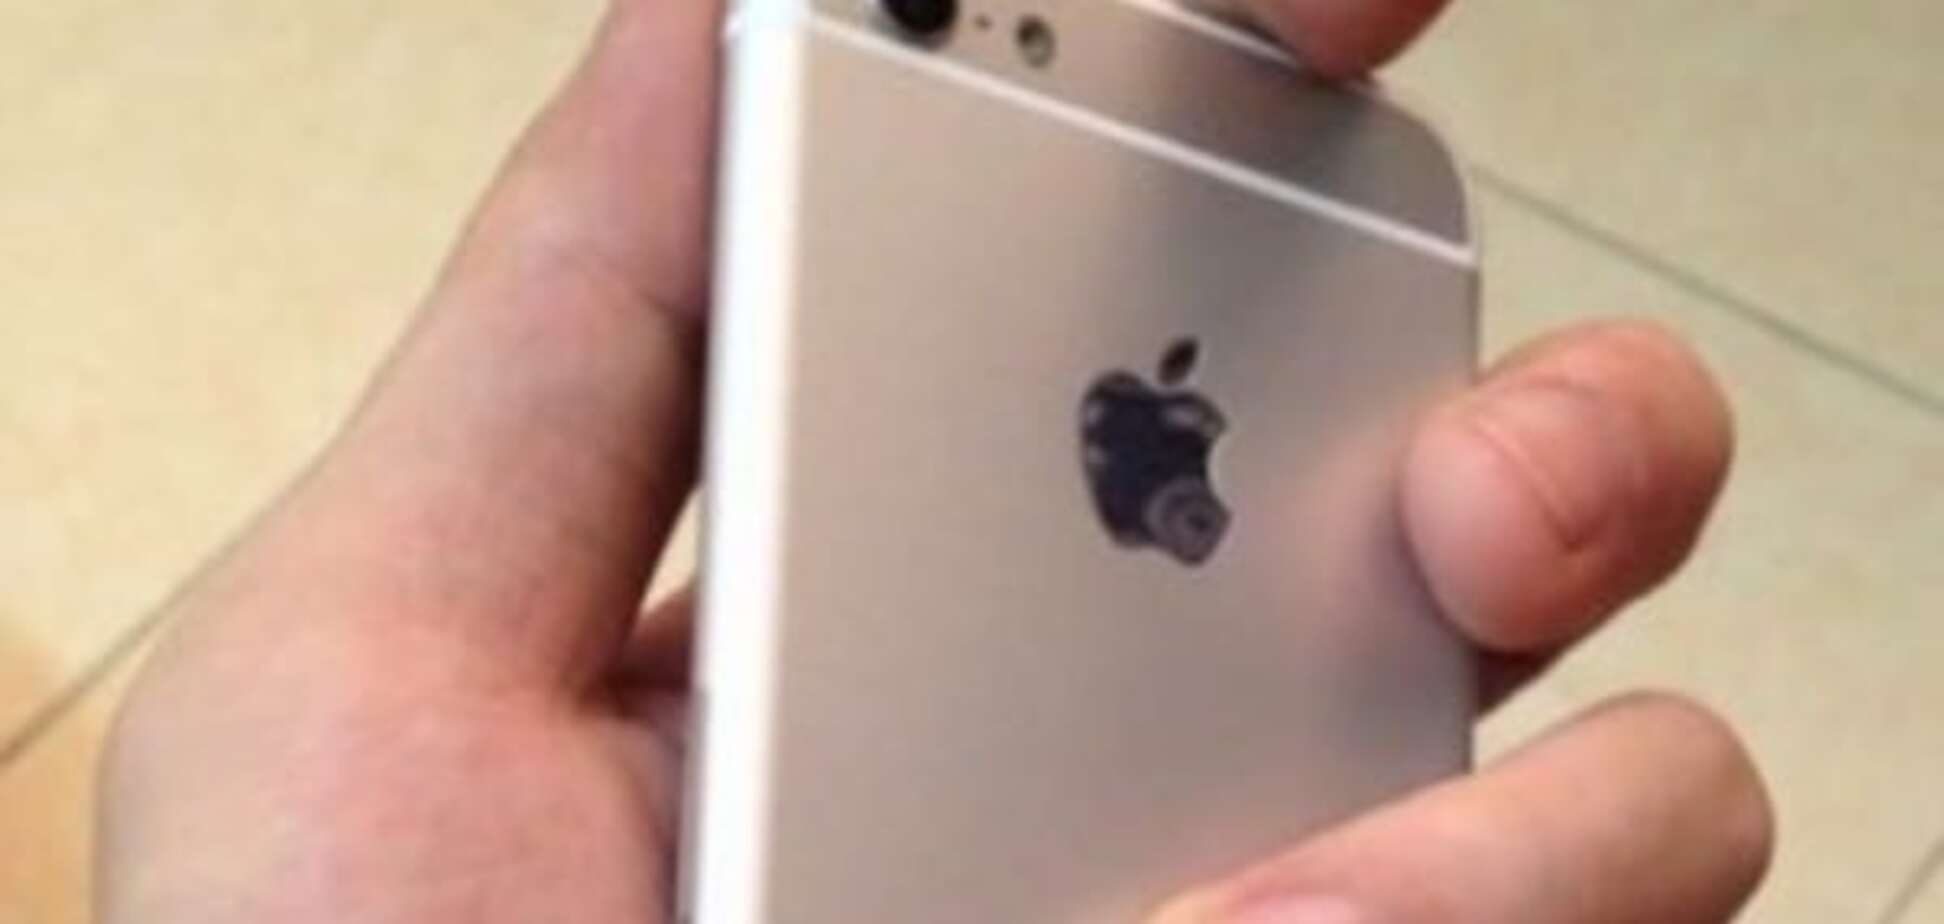 В сети раскрыли дизайн нового iPhone 6C: опубликованы фото